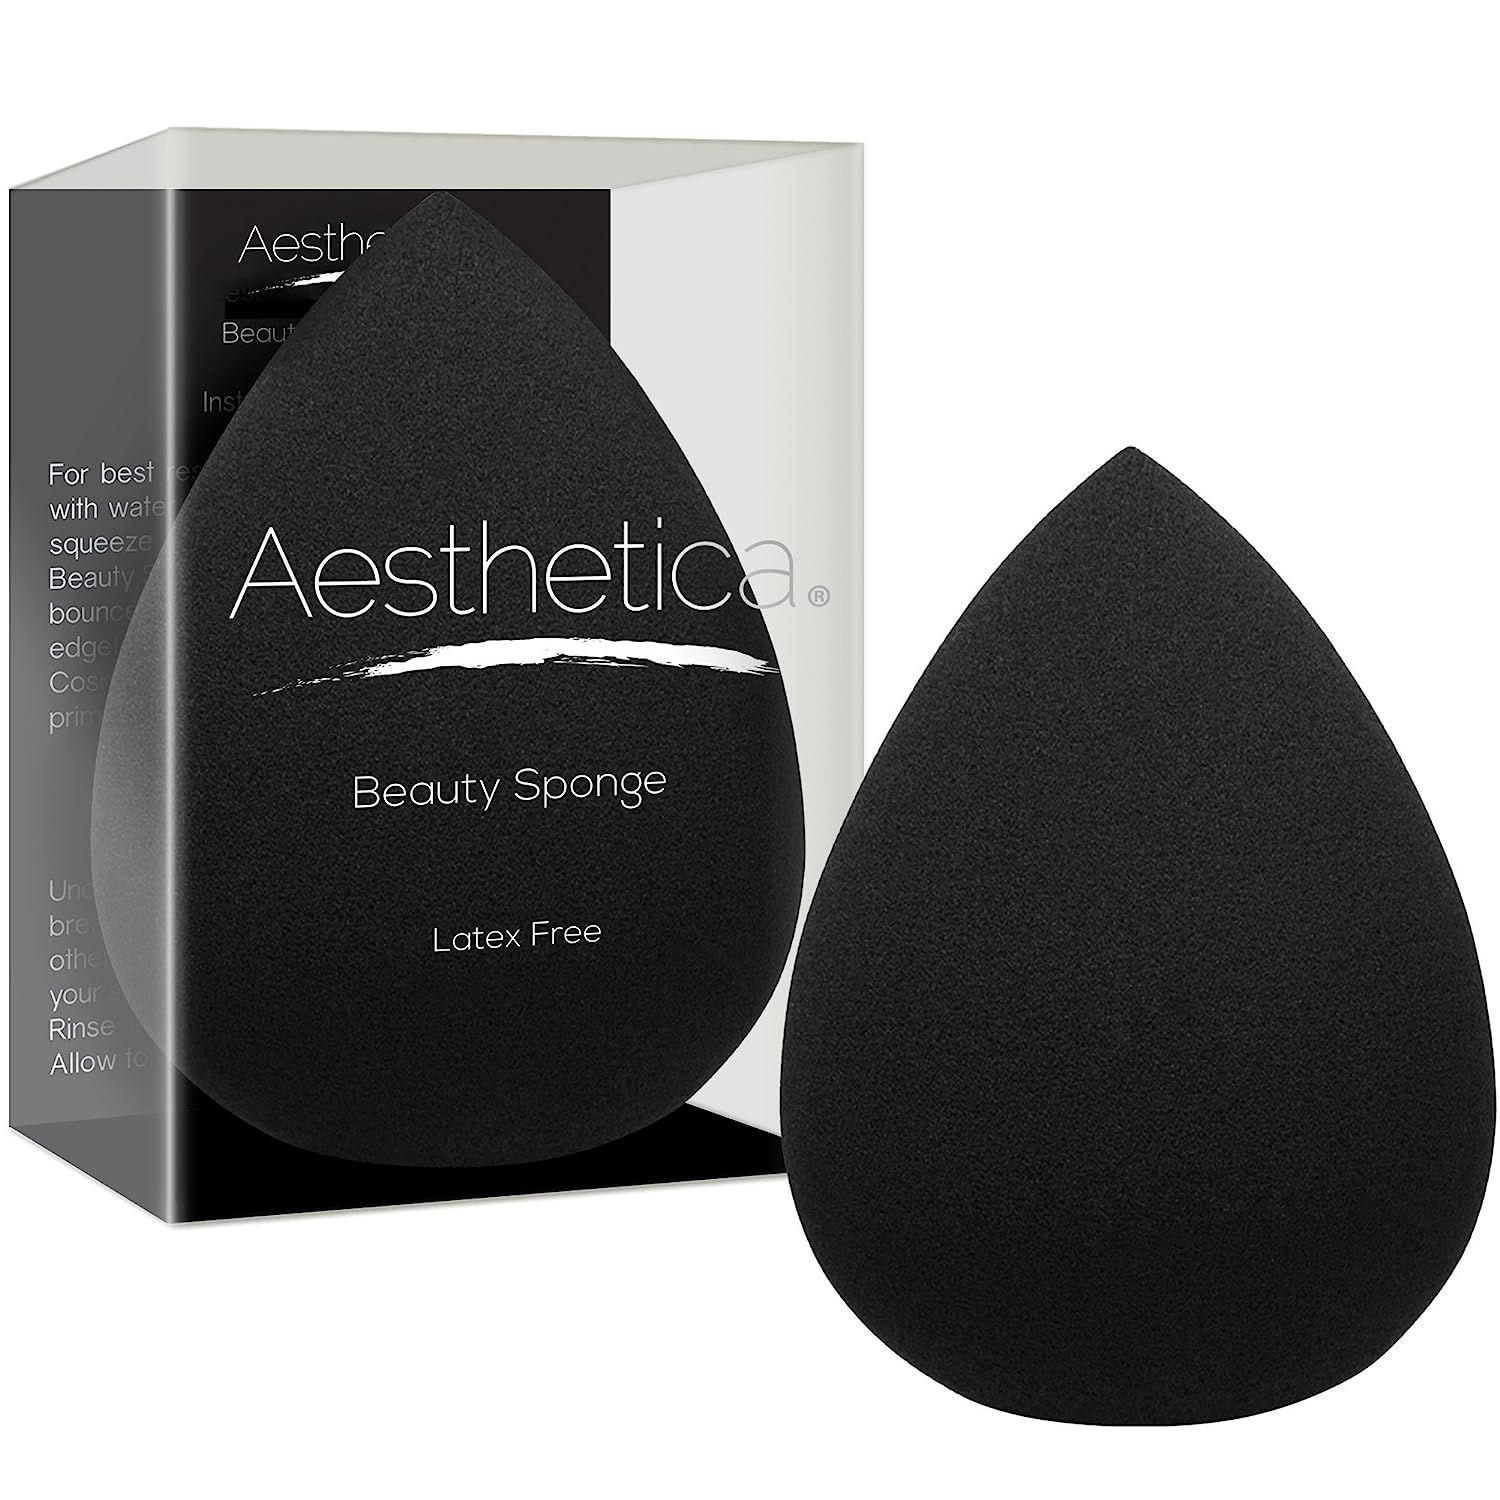 Aesthetica Cosmetics Beauty Sponge Blender - Latex Free and Vegan Makeup Sponge Blender - For Pow... | Amazon (US)